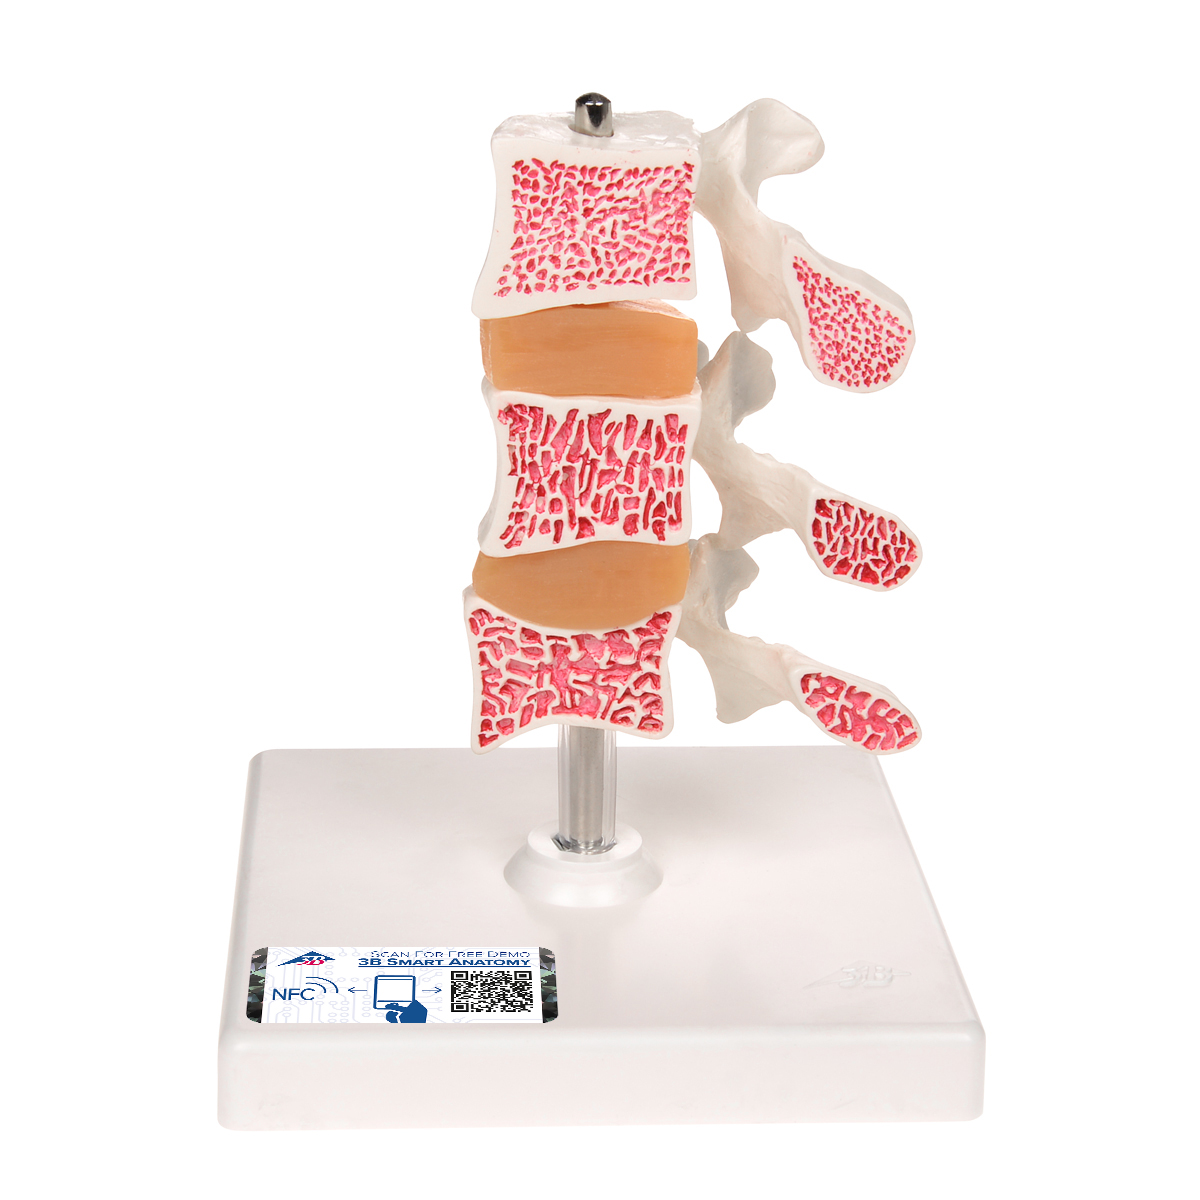 Osteoporose Modell mit 3 Lendenwirbeln, auf Stativ - 3B Smart Anatomy, Bestellnummer 1000153, A78, 3B Scientific